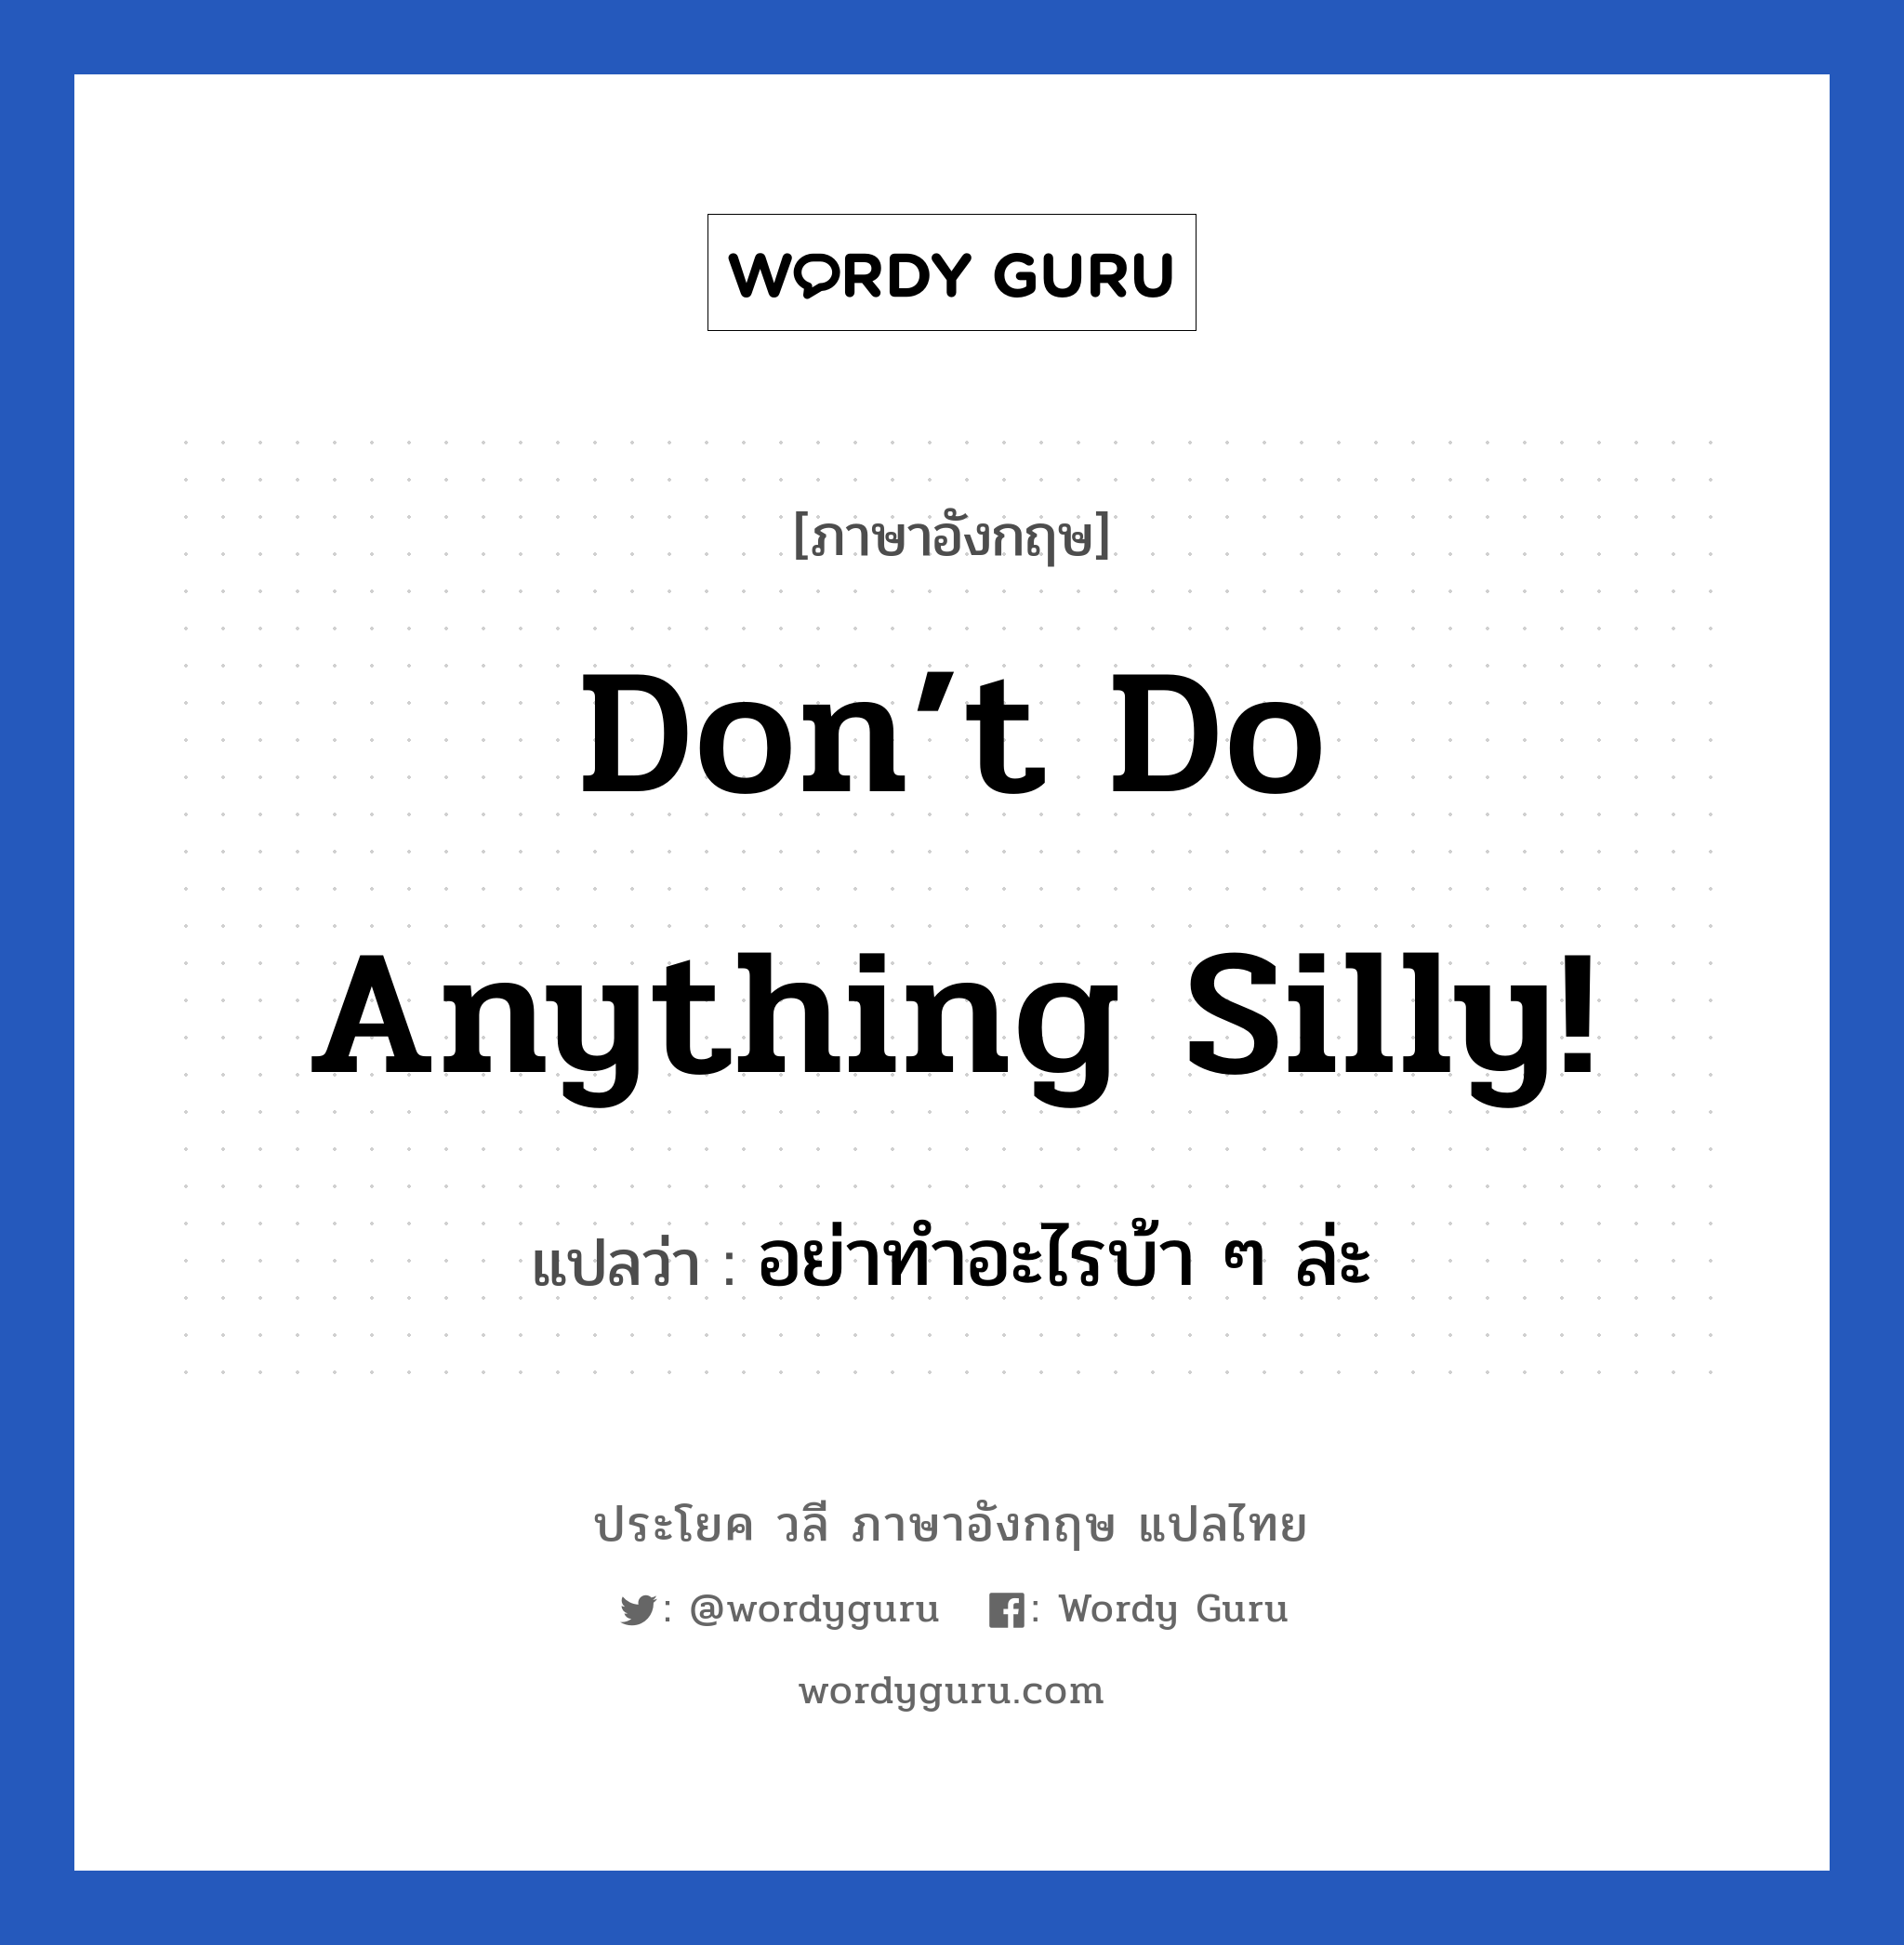 Don’t do anything silly! แปลว่า?, วลีภาษาอังกฤษ Don’t do anything silly! แปลว่า อย่าทำอะไรบ้า ๆ ล่ะ หมวด เป็นห่วง